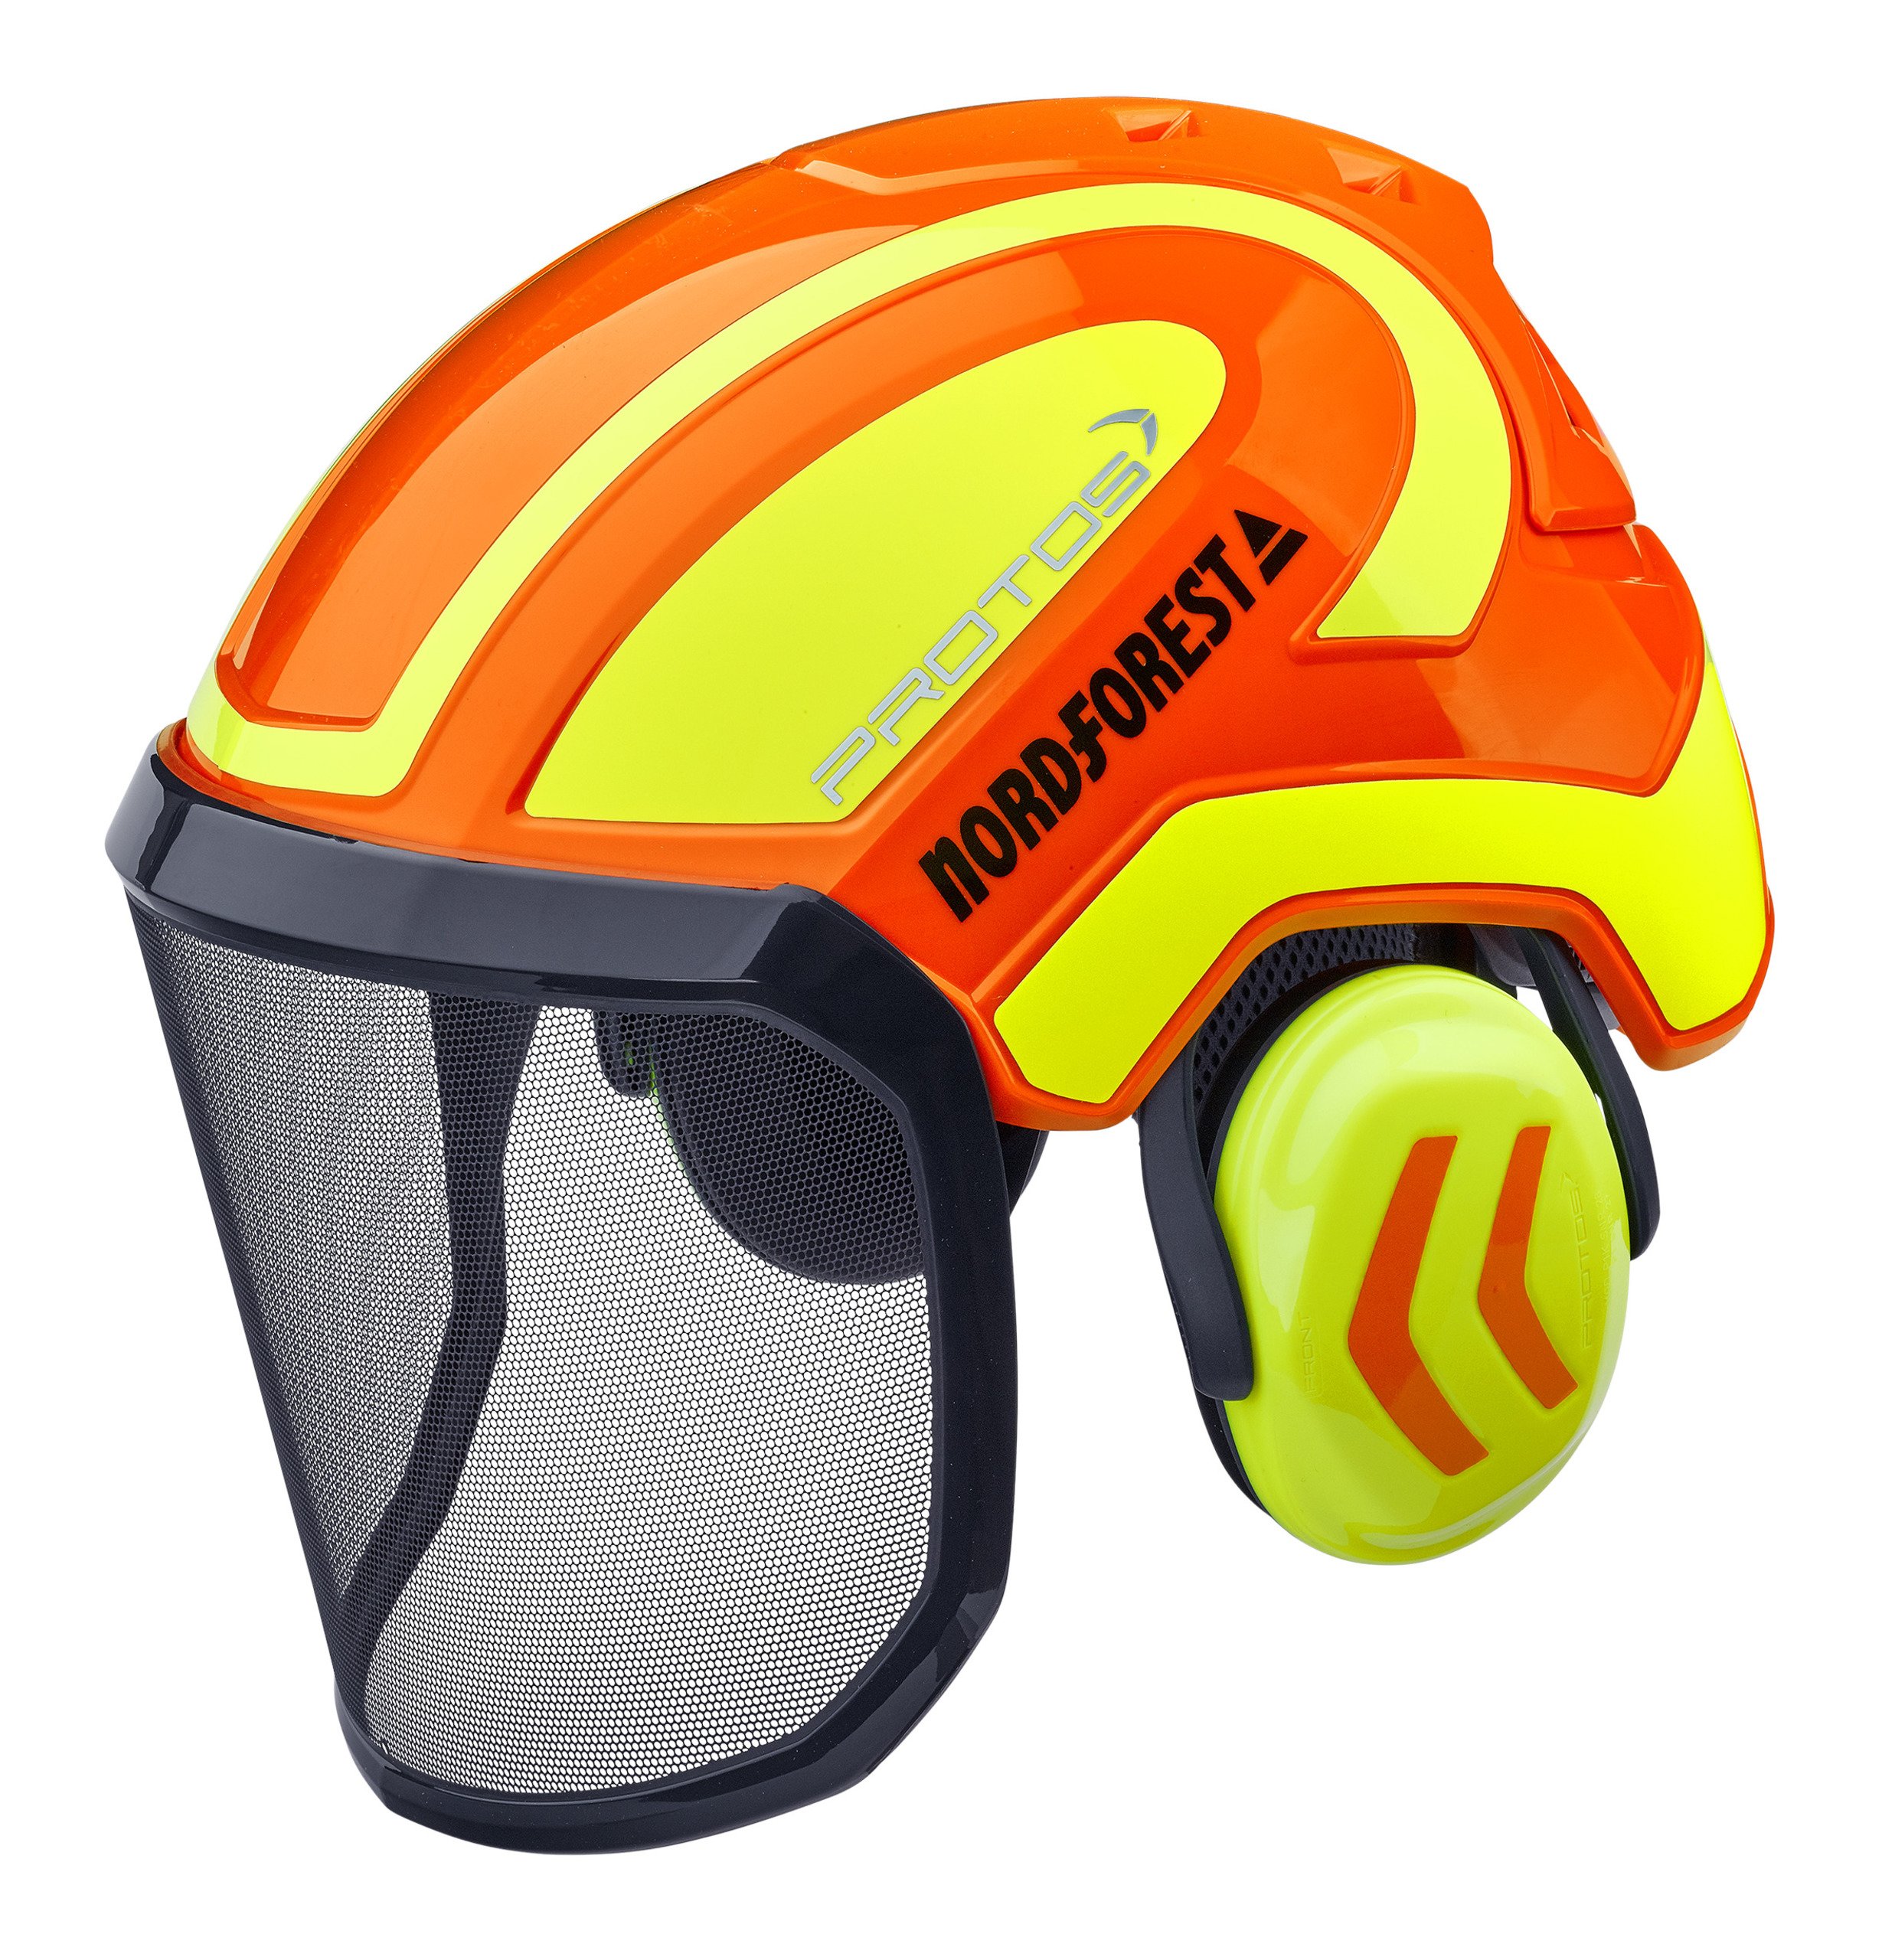 Combinazione di protezione per la testa Protos Integral Forest  arancione-giallo neon, Caschi accessori, Caschi & Co, Abbigliamento  forestale e da lavoro